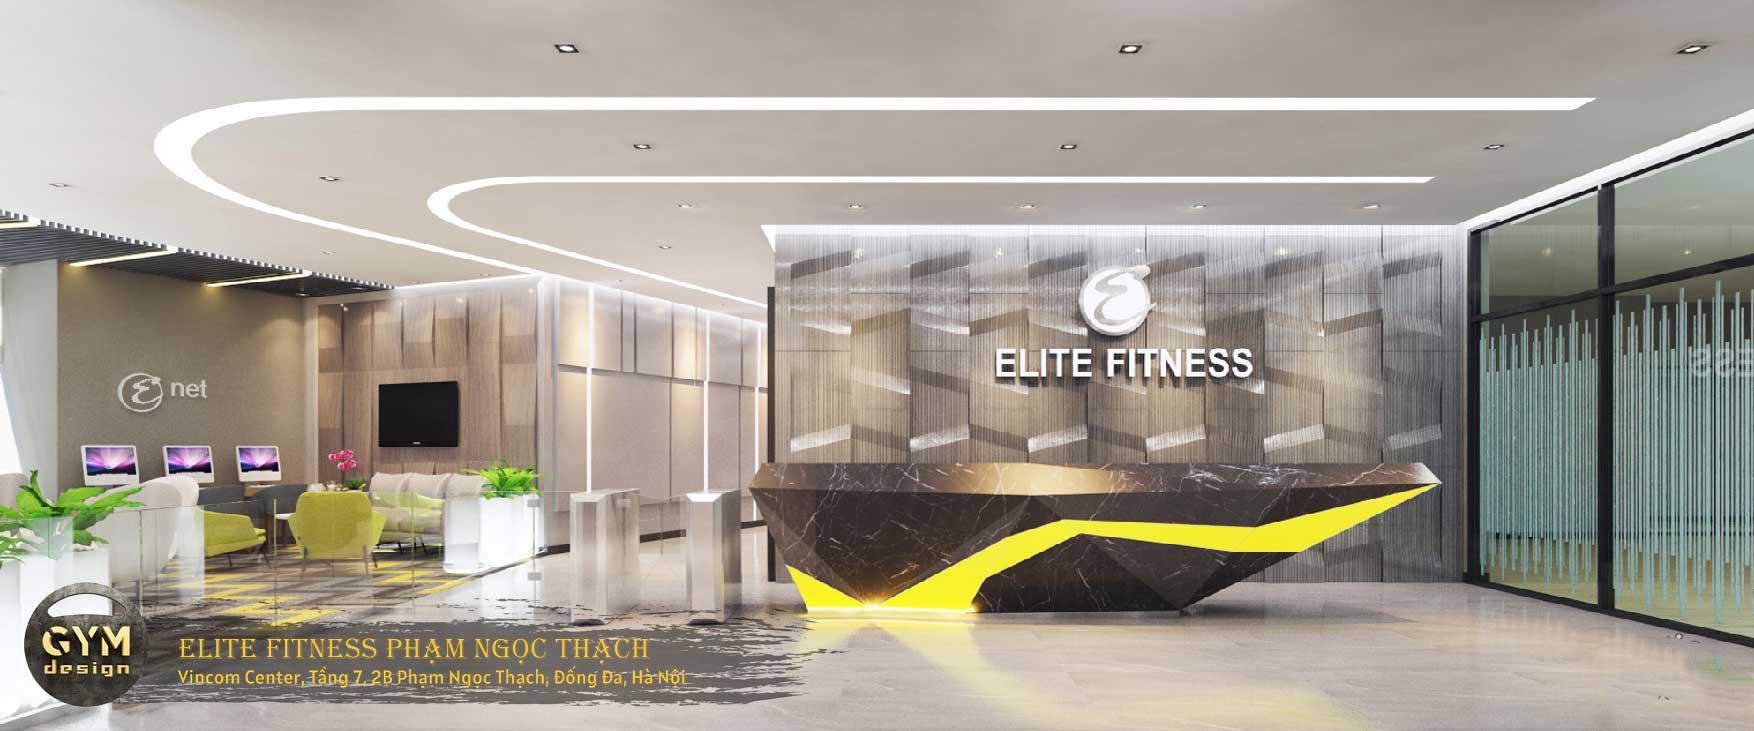 Tập luyện tại Elite Fitness CS Phạm Ngọc Thạch mới đúng là trải nghiệm tuyệt vời cho người yêu thể thao. Không chỉ được sử dụng trang thiết bị hiện đại và đa dạng, bạn còn được tắm xông hơi trong một không gian điêu khắc đến từng chi tiết. Sẵn sàng đánh thức sự thú vị và đam mê trong bạn.